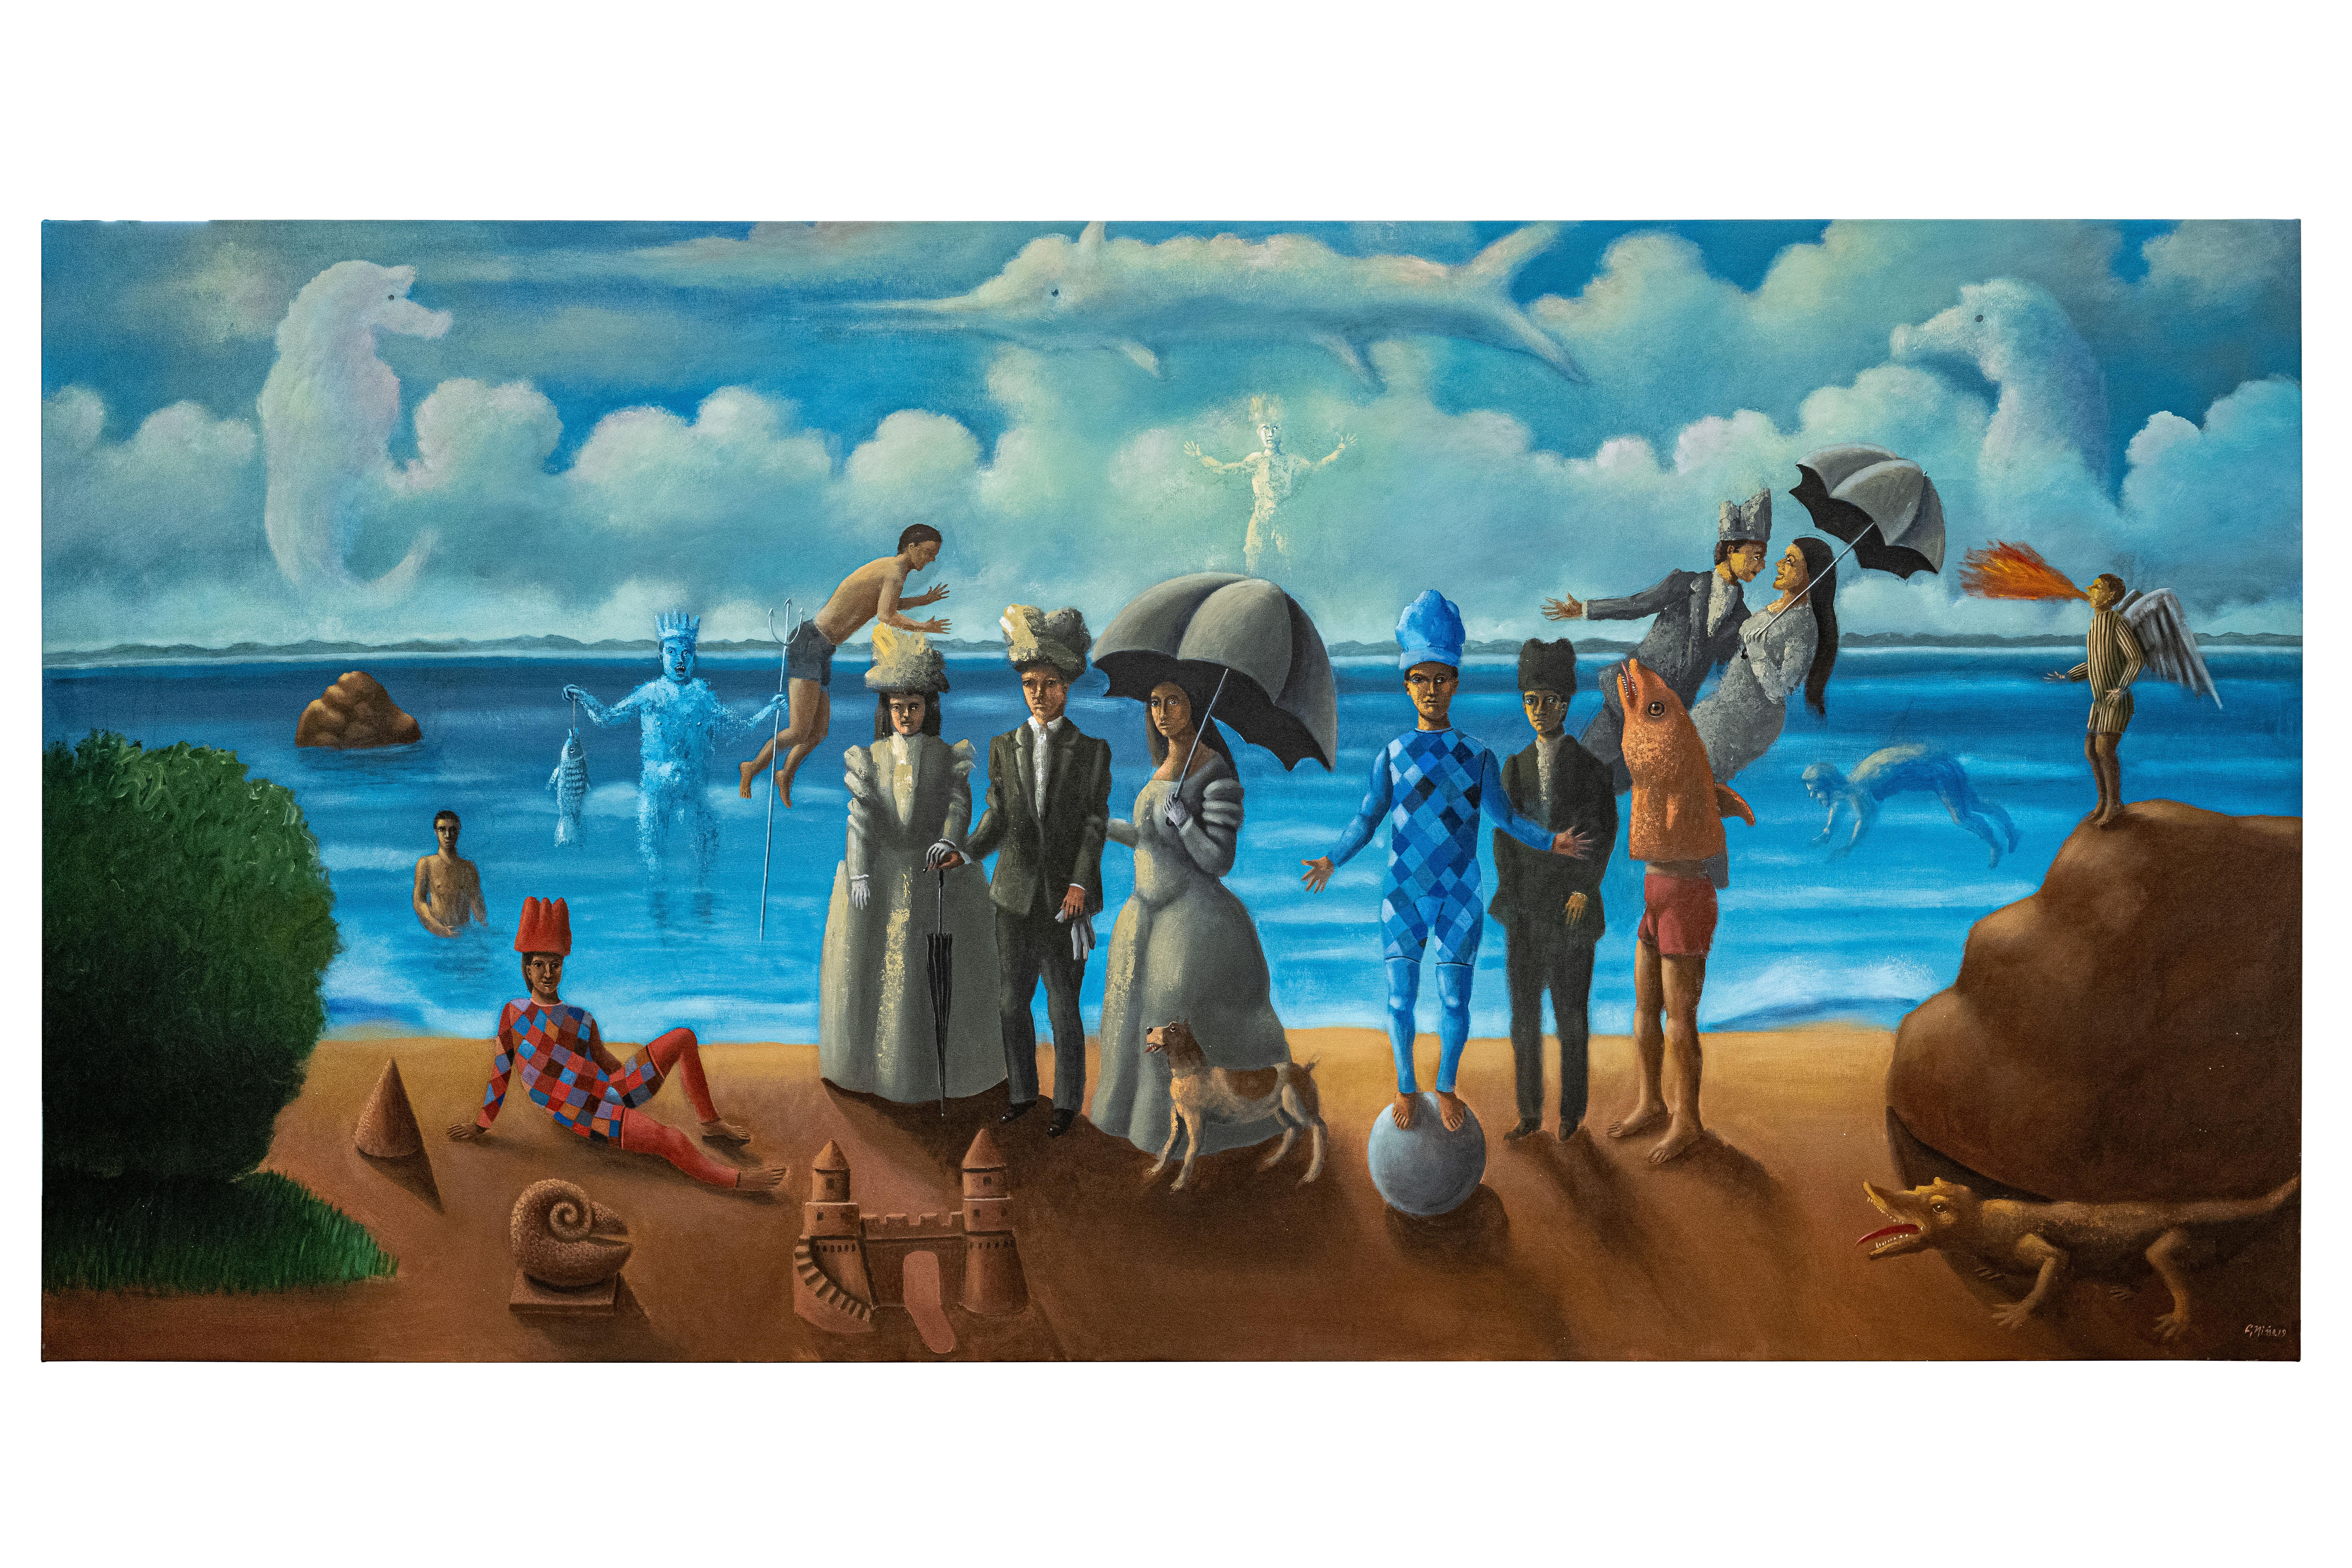 Carmelo Nio, Amantes con escena, 2019, 200 x 400 cm, 78,7 x 157,4 pouces - Painting de Carmelo Niño